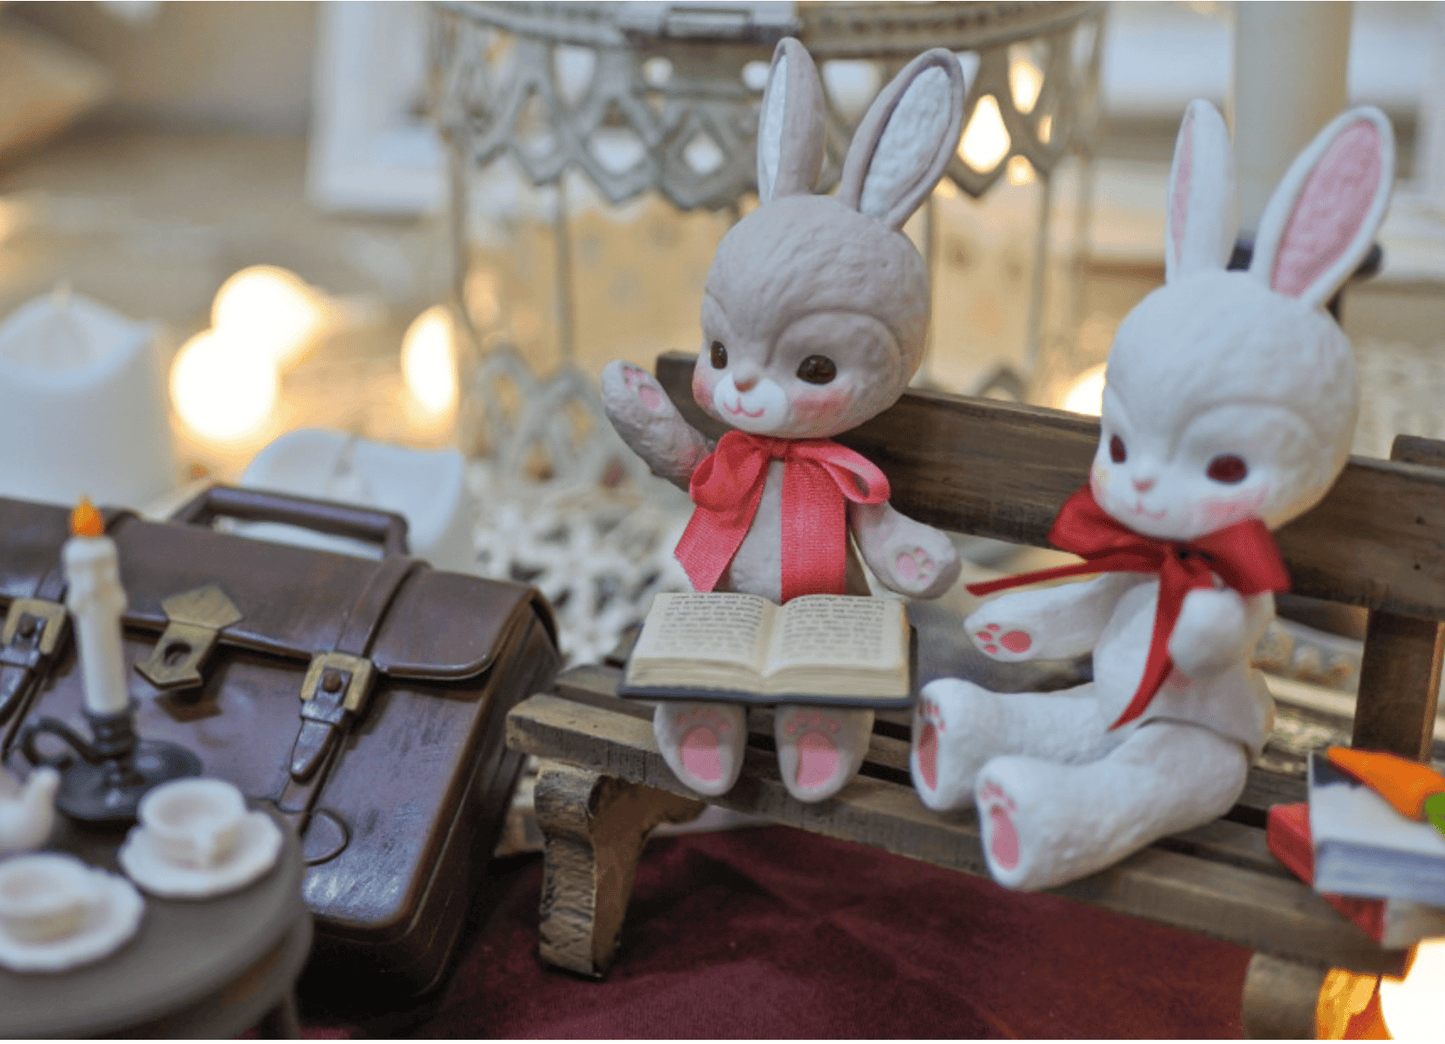 【GEPPETO FRIENDS】gfDolls little KKuming Bunny 小兔子 伯爵茶肌 / 現貨